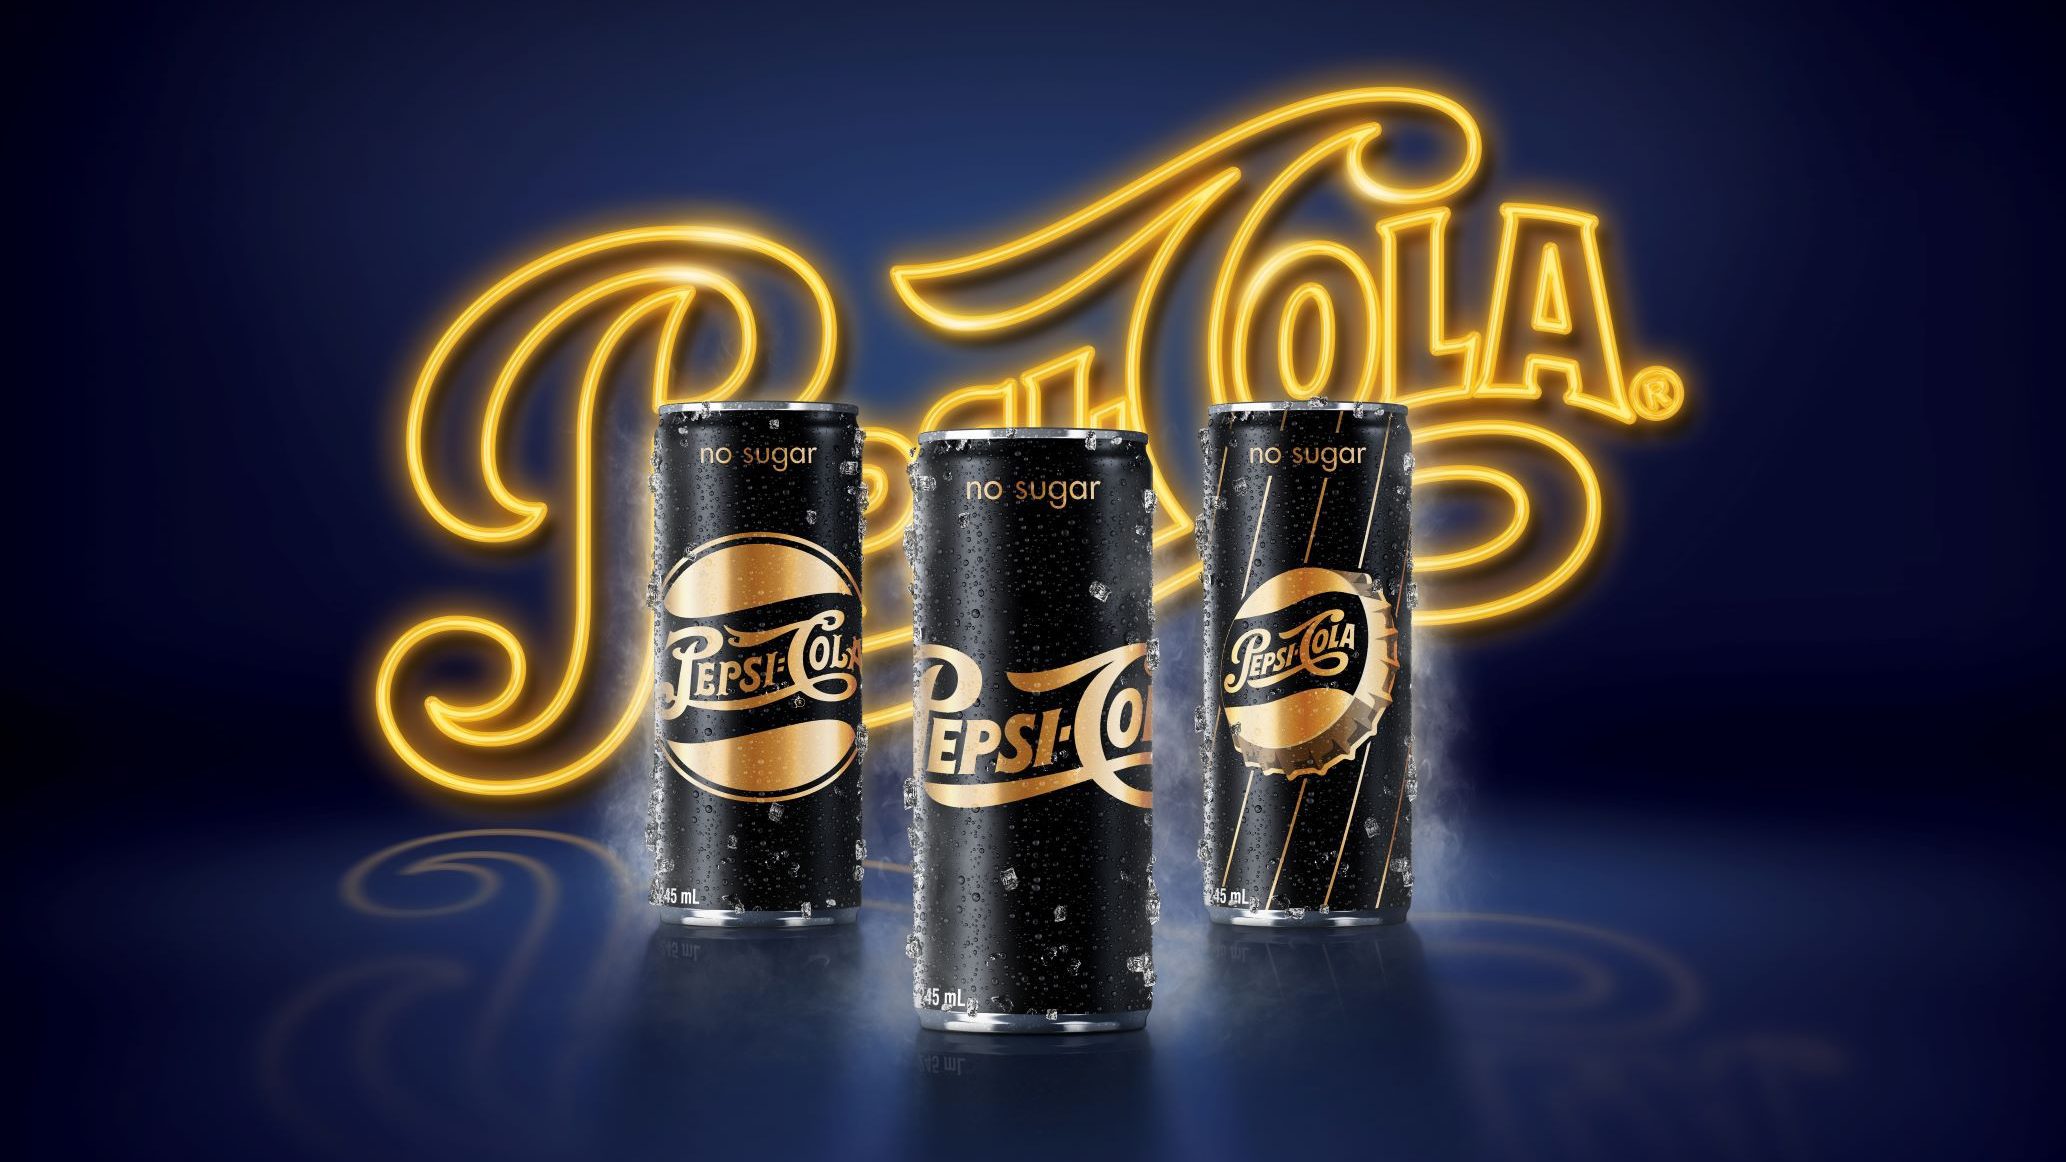 เป๊ปซี่ ส่งความซ่ากับคอลเลคชันพิเศษ Pepsi Golden Retro 3 ลายลิมิเต็ดอิดิชั่น รีบสะสมหรือส่งต่อความซ่า ด่วน! เฉพาะช่วงปีใหม่นี้เท่านั้น